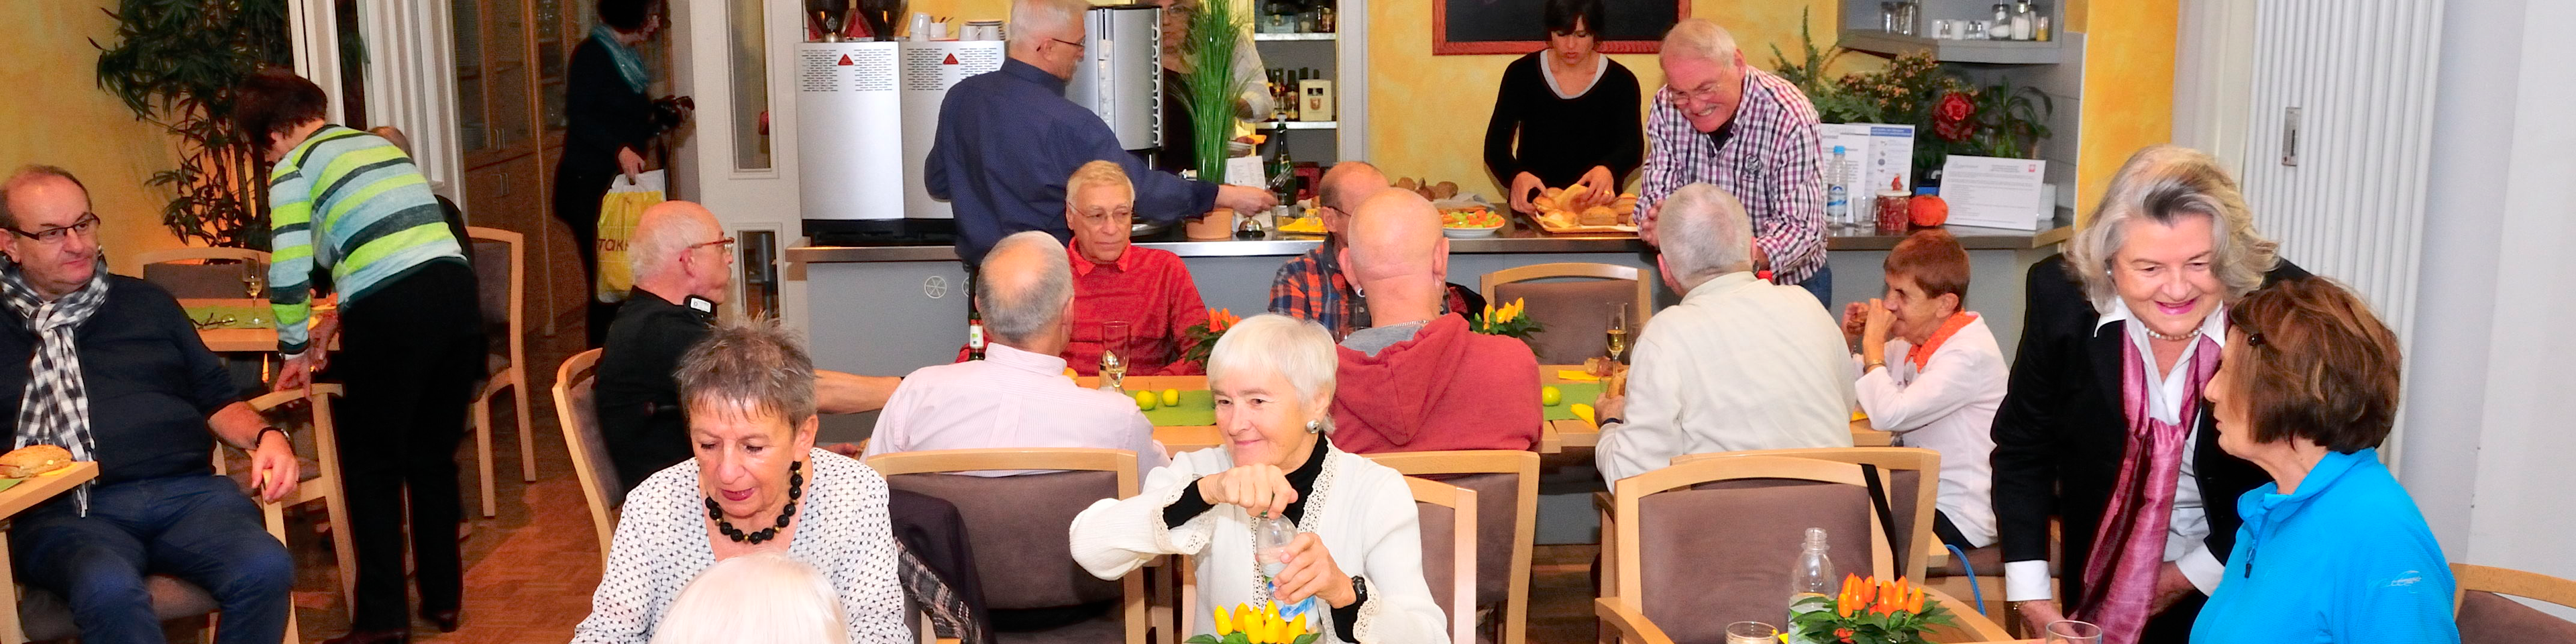 Senioren essen zusammen in der Cafeteria zu Mittag | © Caritas München und Oberbayern